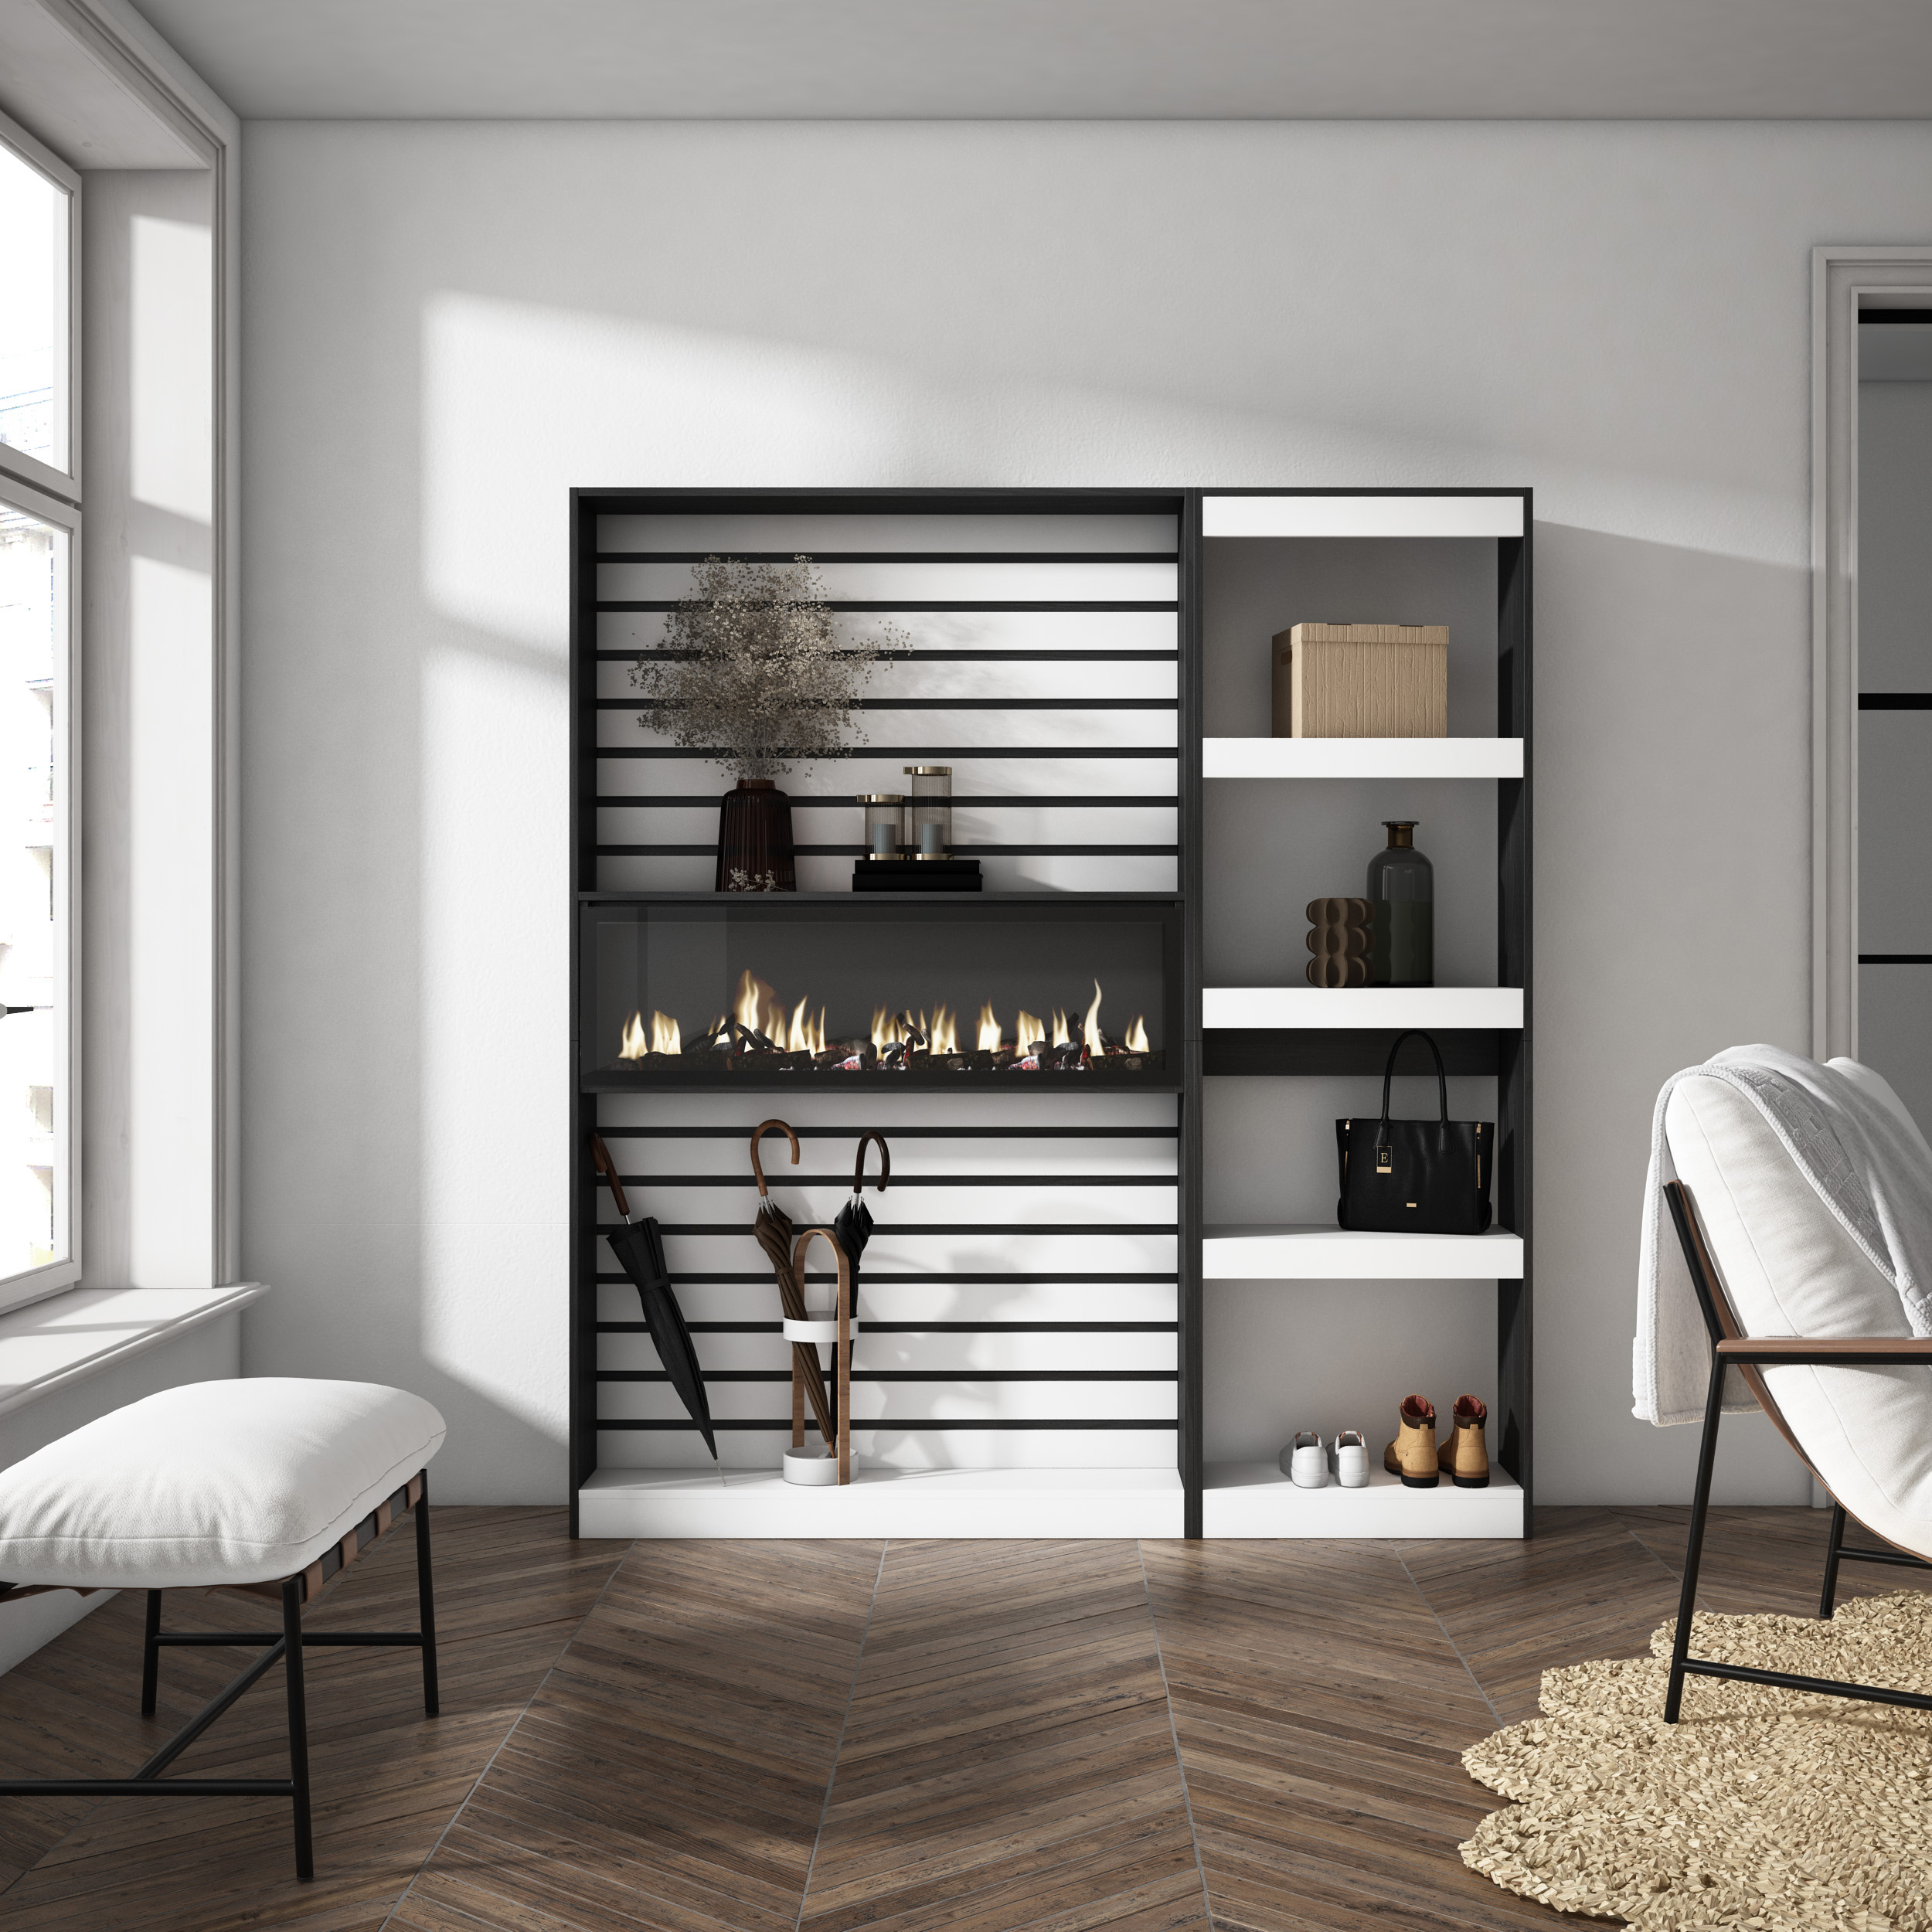 Librería estantería, Blanco y negro, Chimenea eléctrica, 170x186x25cm